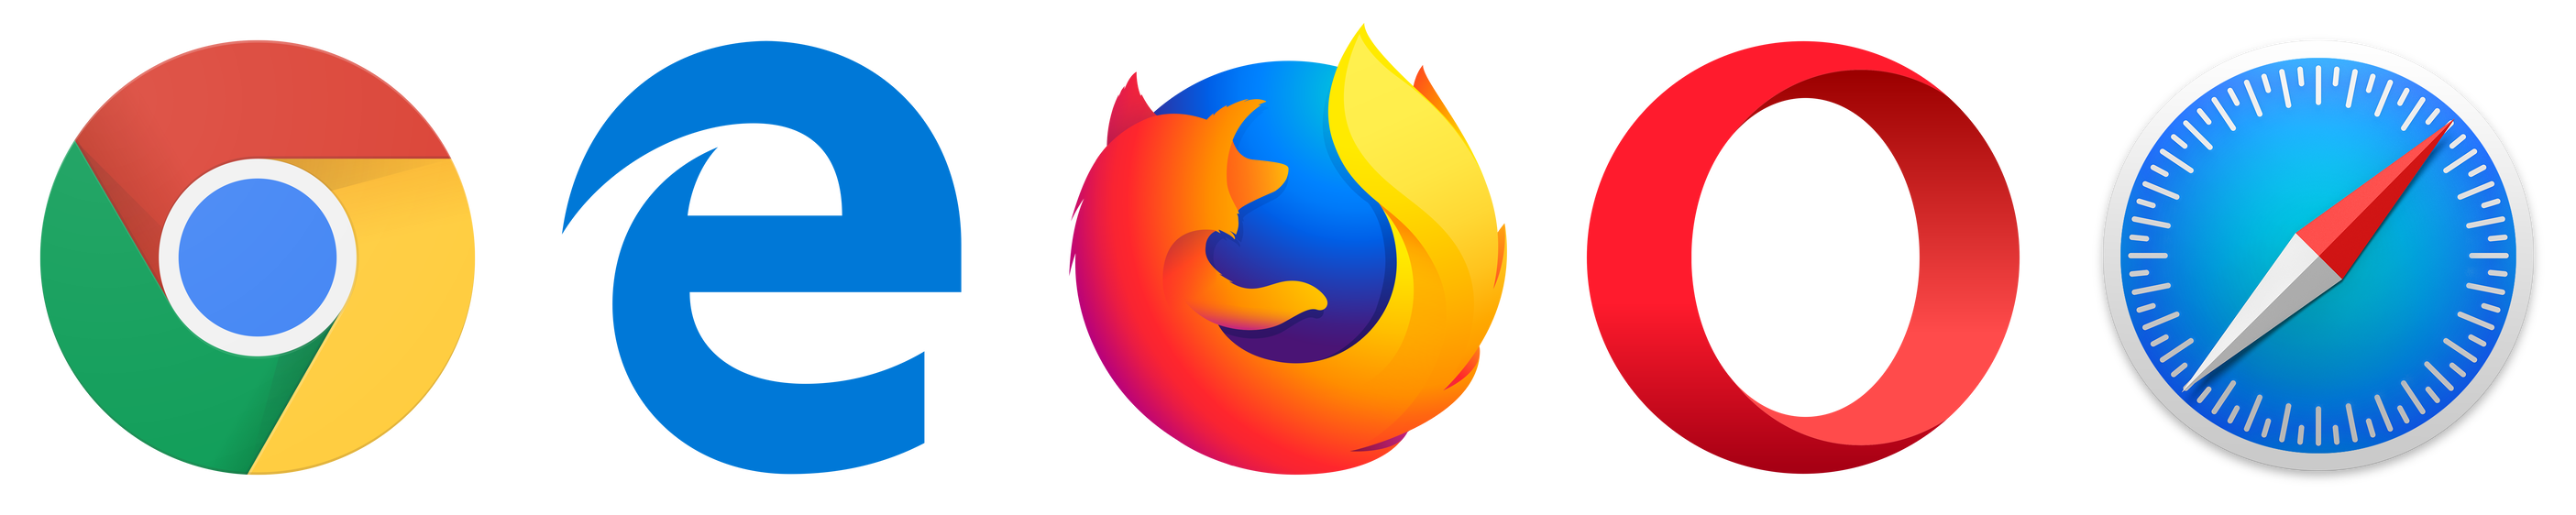 Main desktop browsers